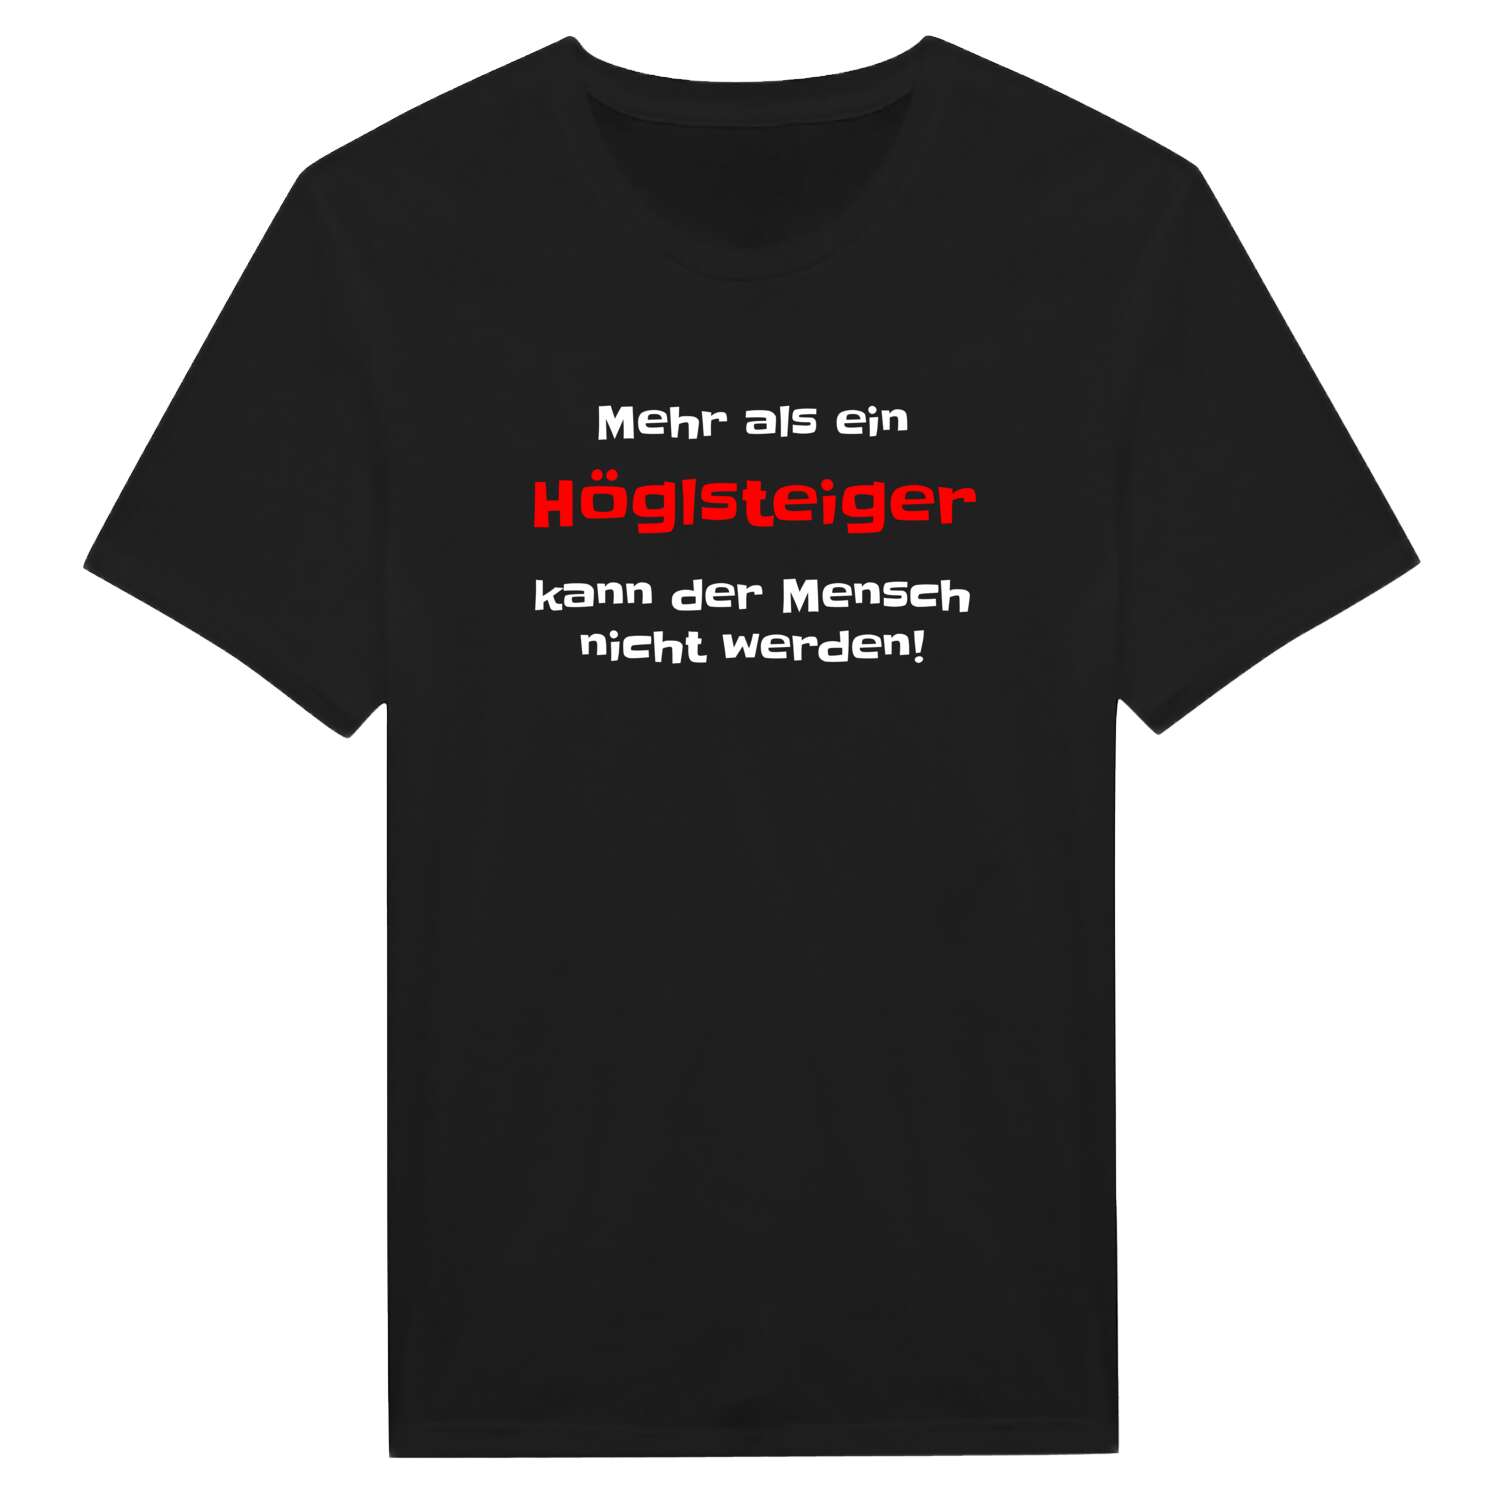 Höglsteig T-Shirt »Mehr als ein«